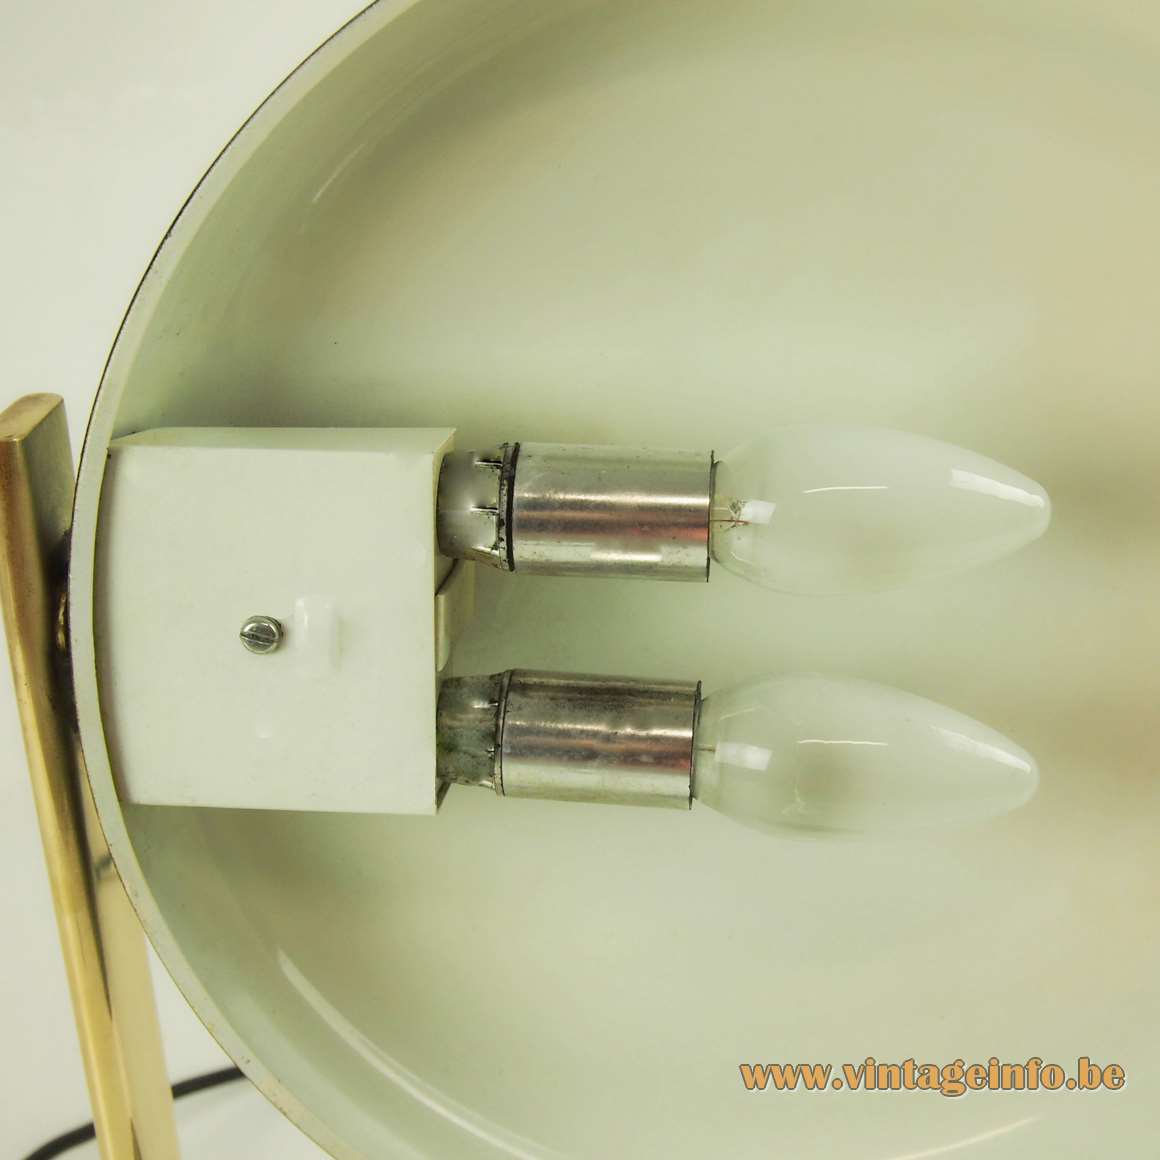 Hillebrand desk lamp 7004 design: Heinz Pfaender lampshade 2 silver painted Bakelite E14 sockets 1970s Germany